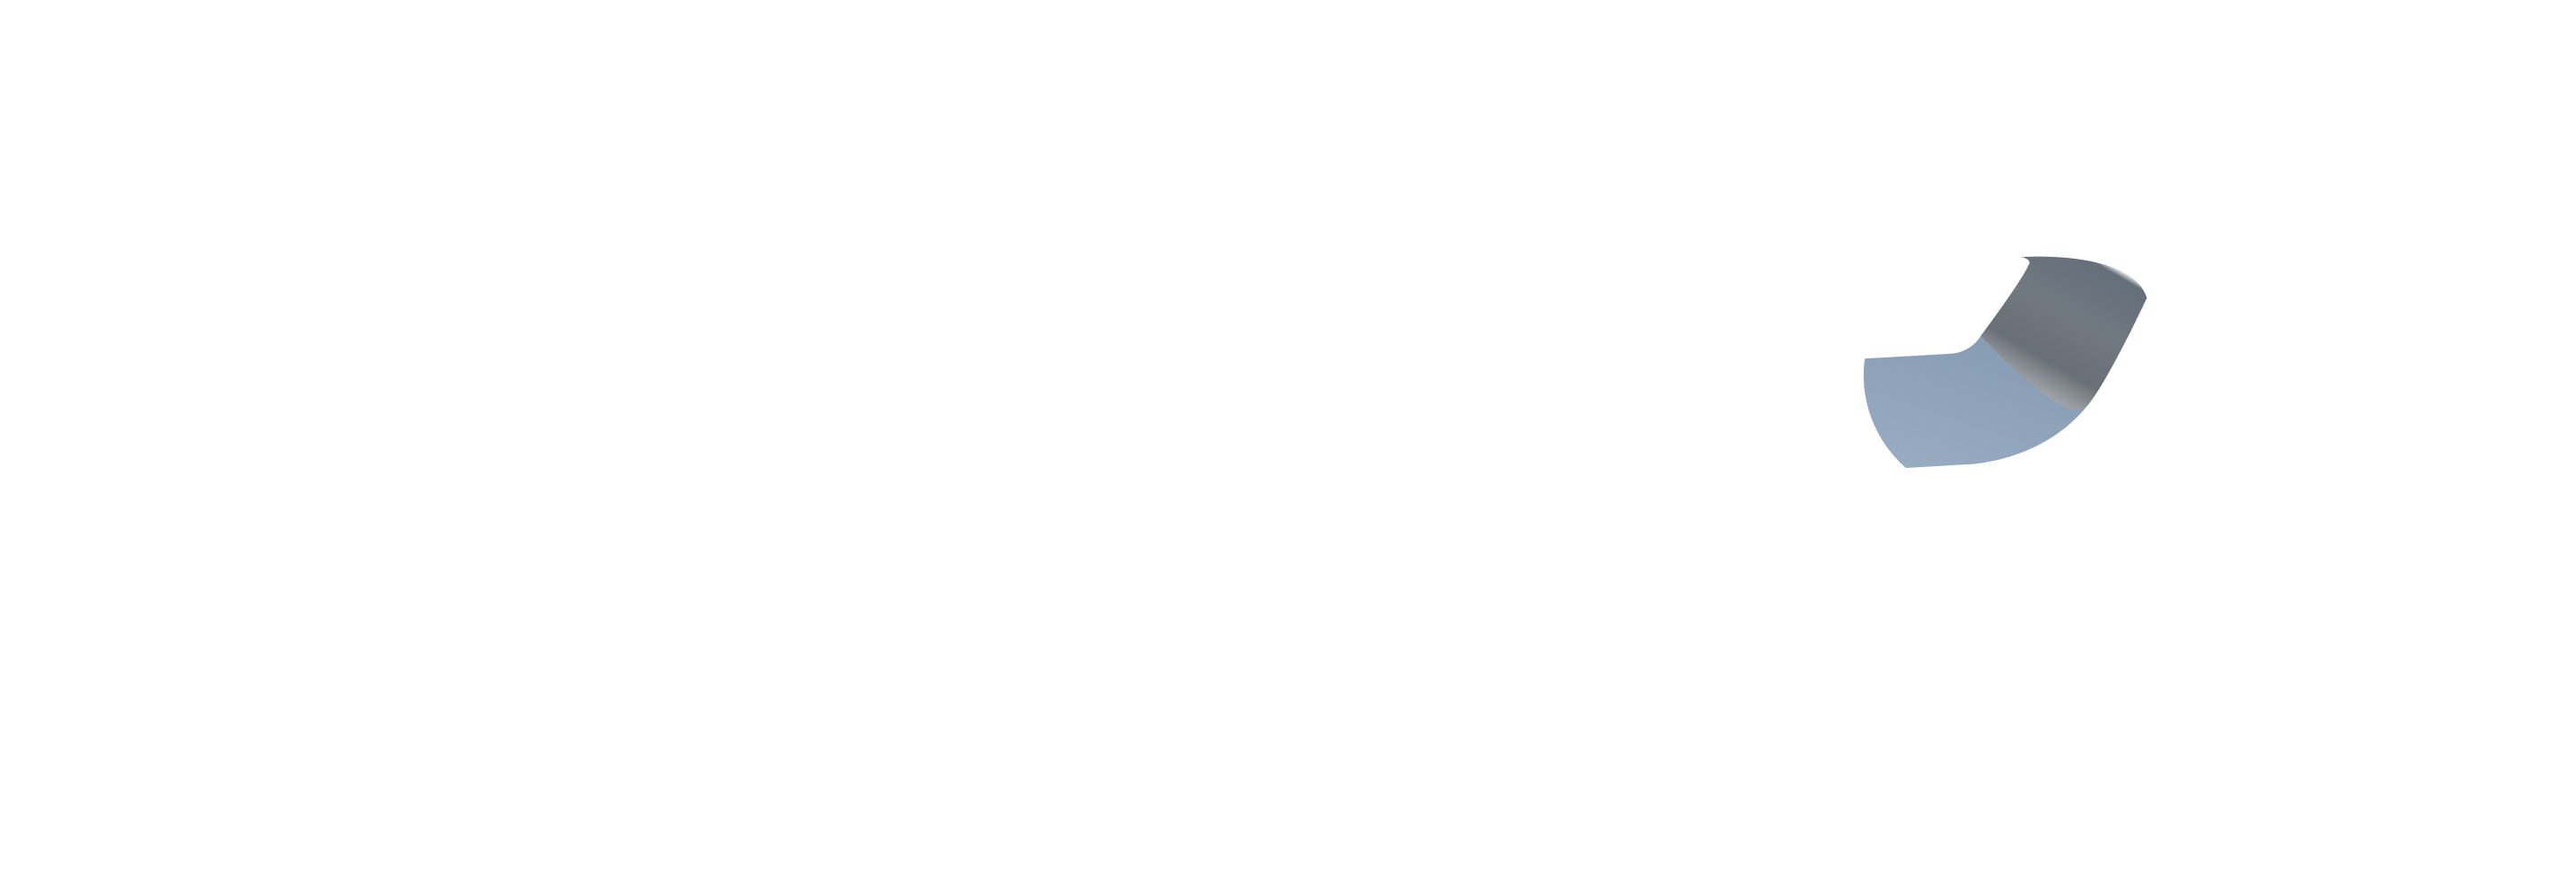 Plutope logo